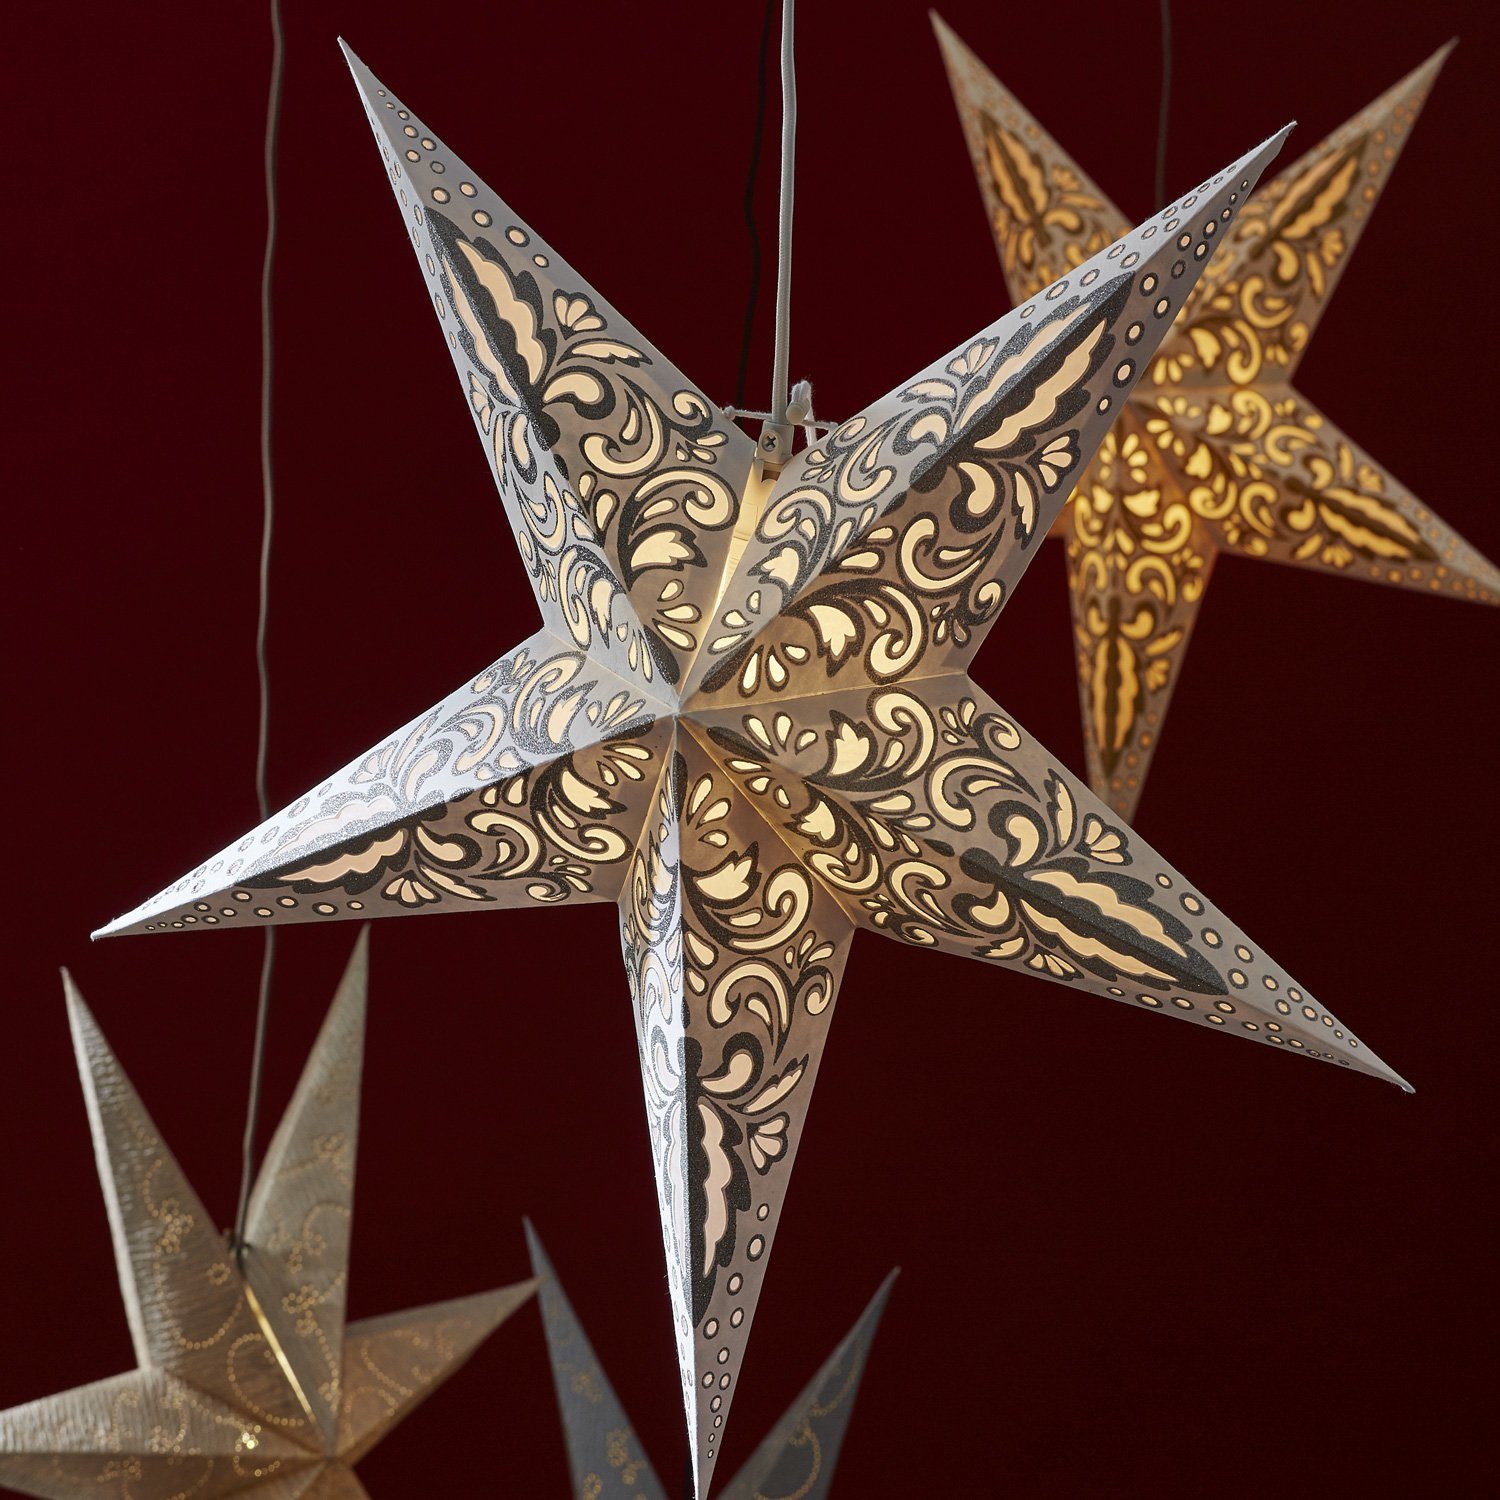 TRADING Papierstern D: silber Leuchtstern Stern Decorus Weihnachtsstern 63cm LED STAR hängend